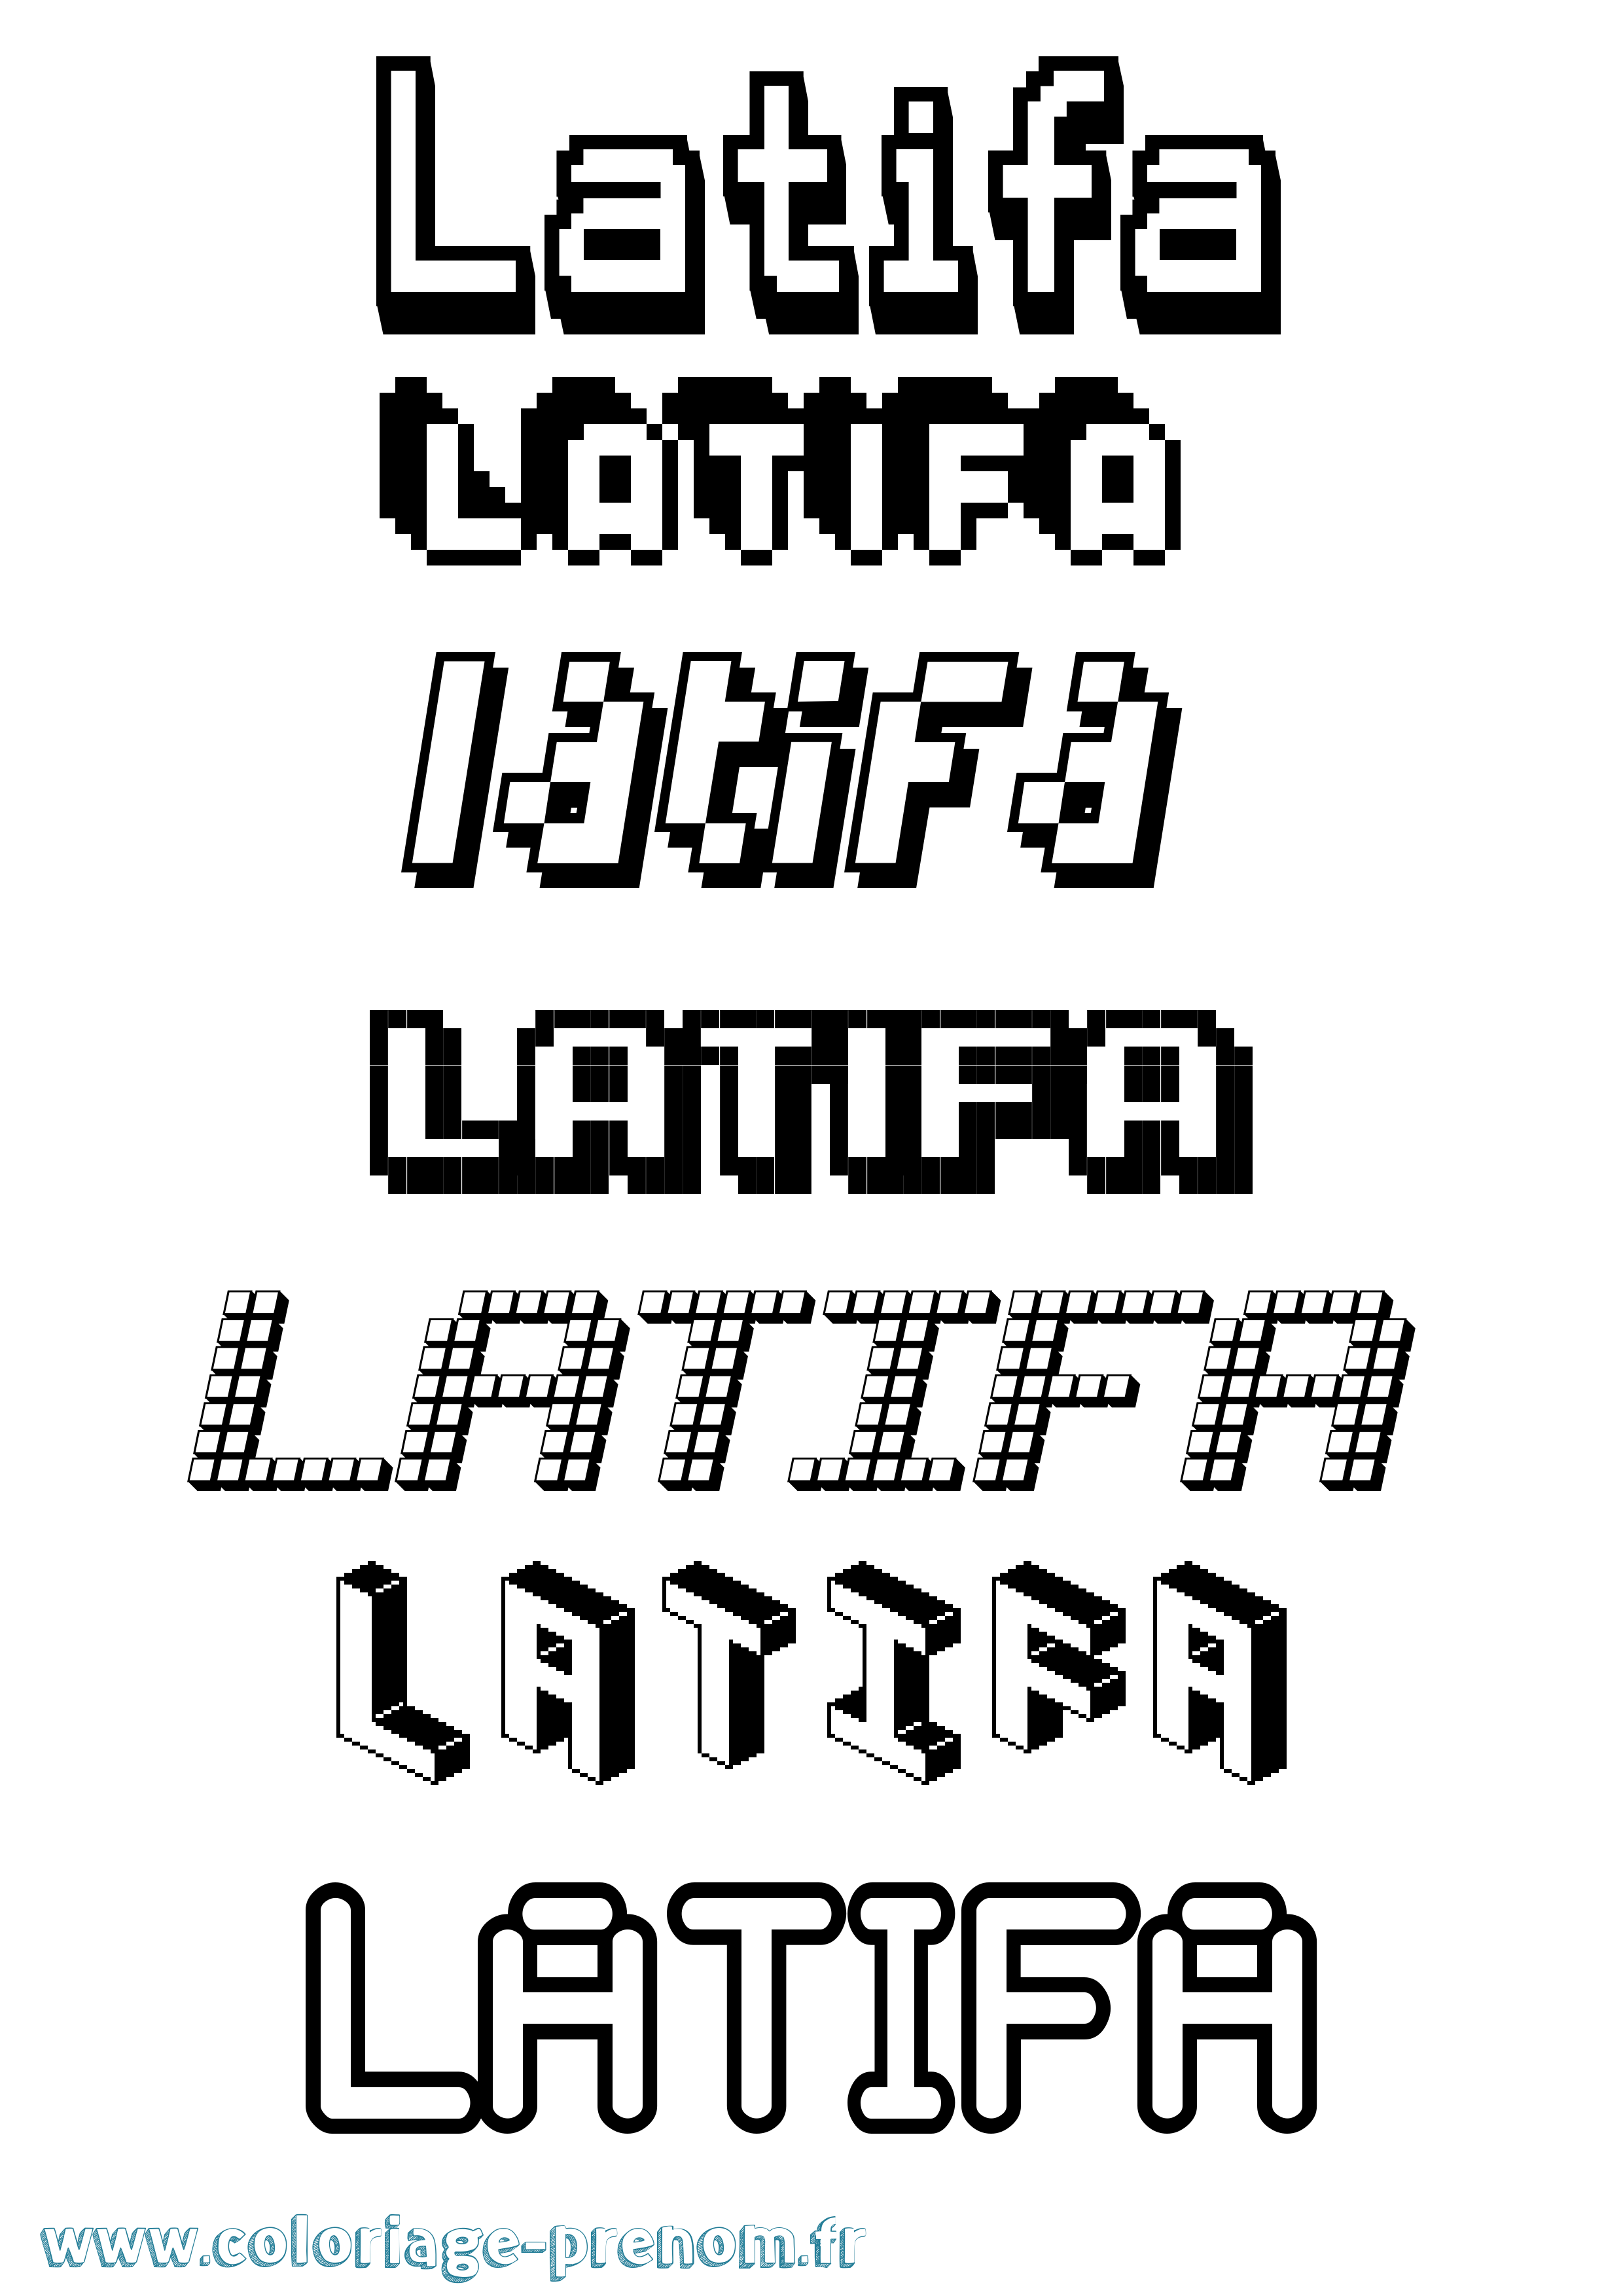 Coloriage prénom Latifa Pixel